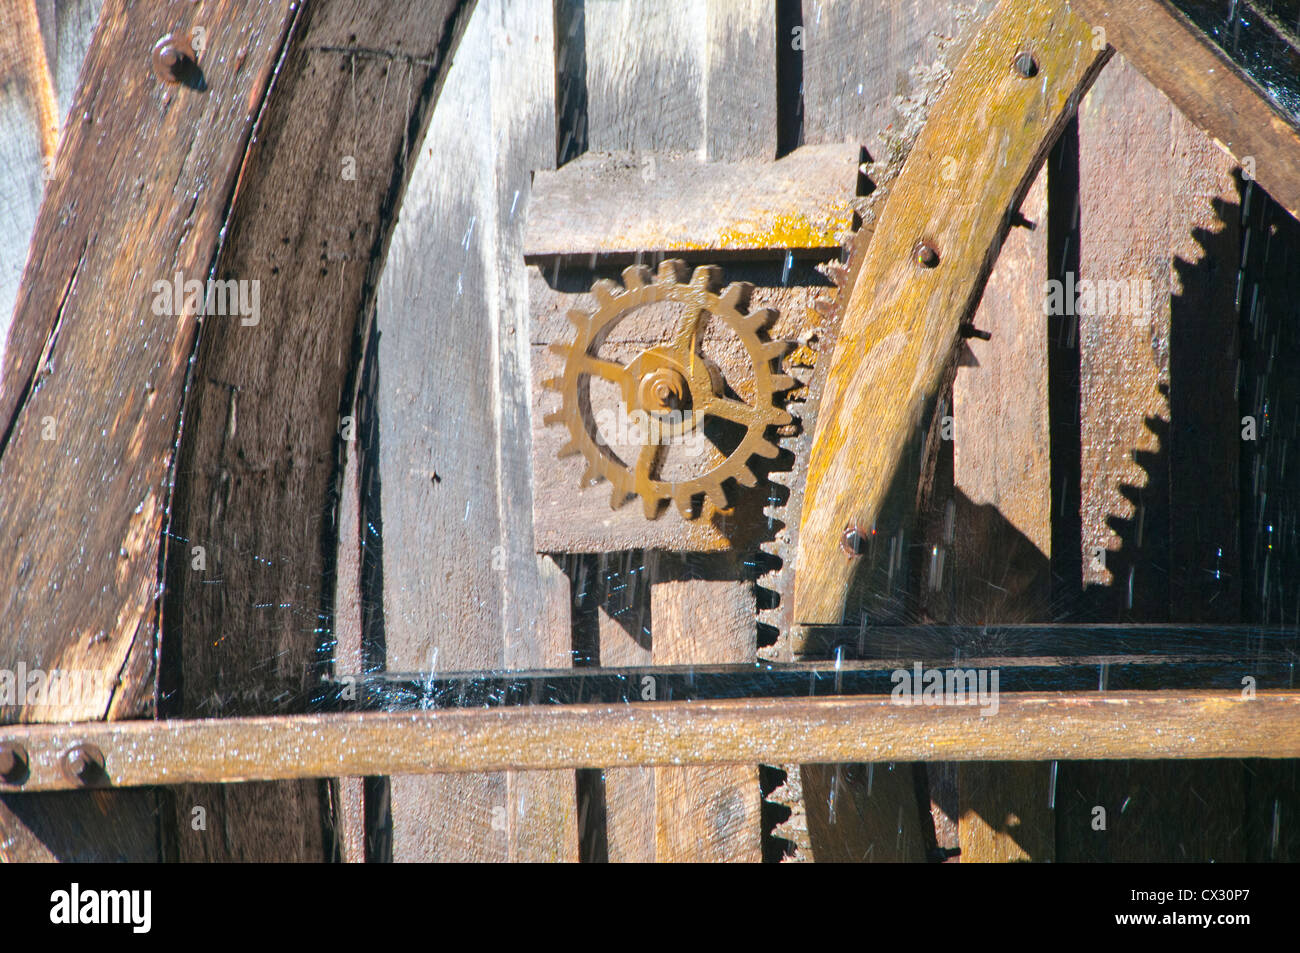 La roue à eau à Mabry Mill, un moulin à grains dans prairies de Dan, VA, tourne une roue comme il se transforme sous la force de l'eau. Banque D'Images